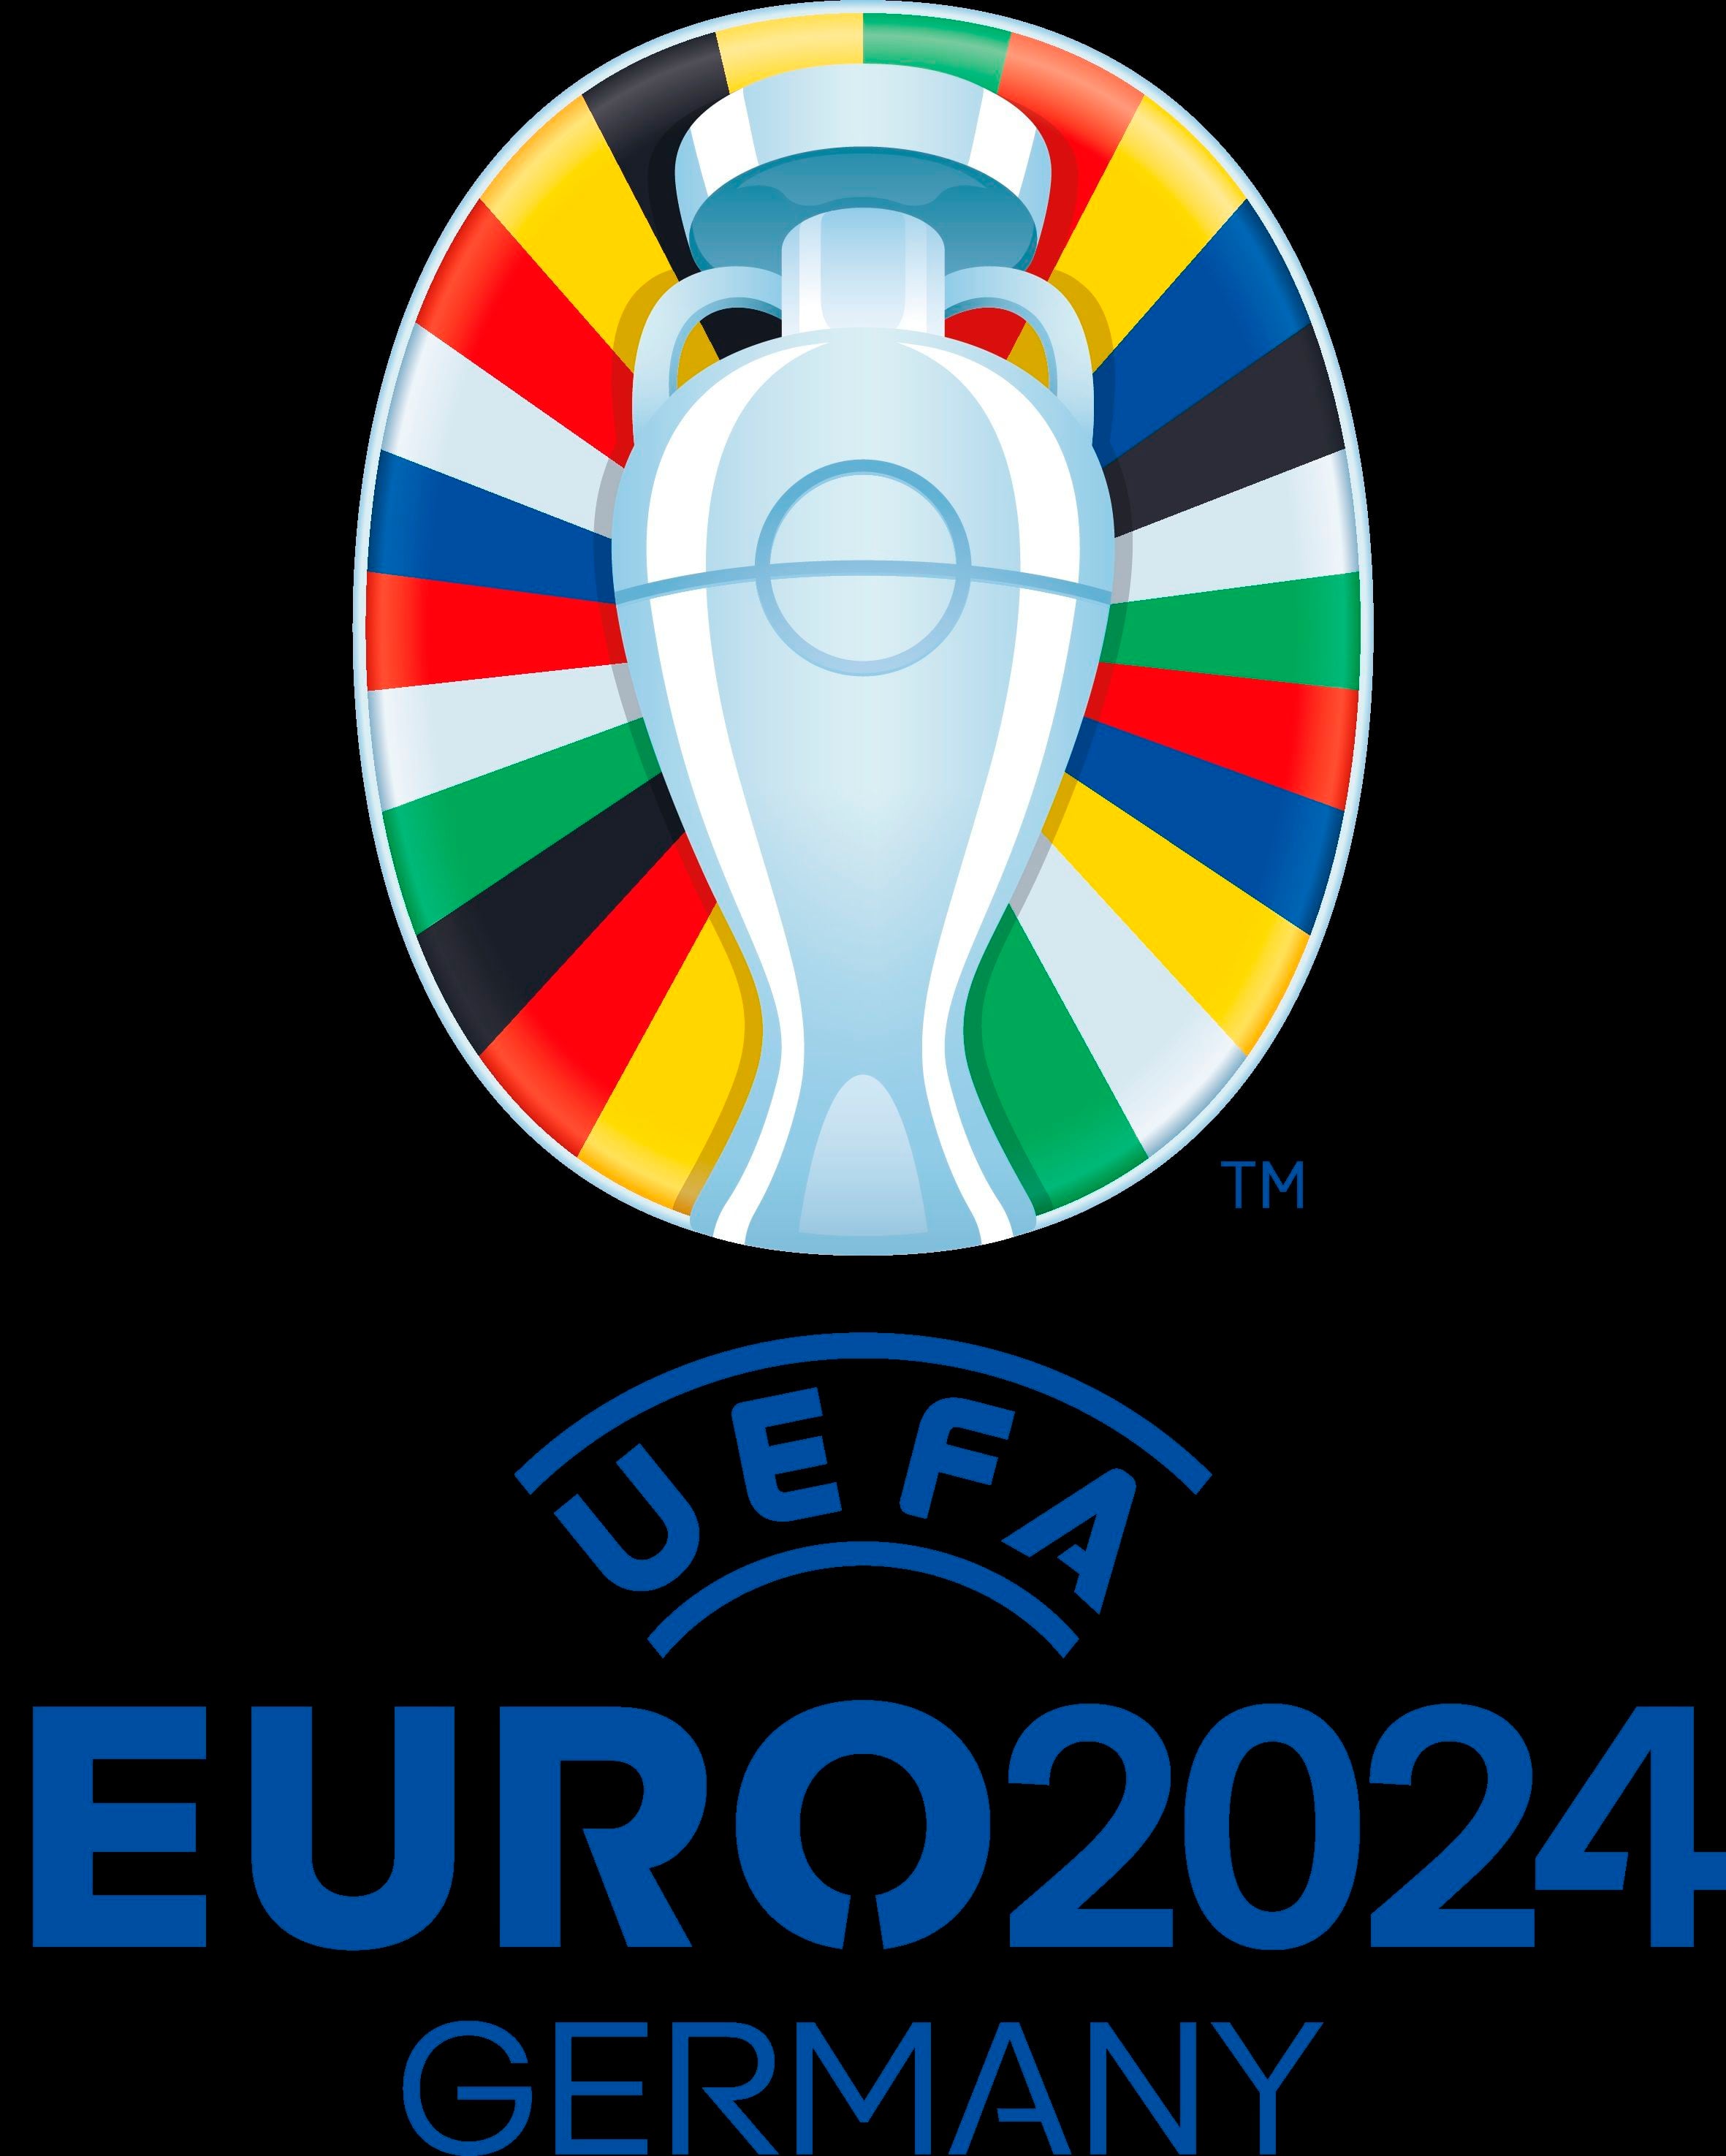 Logotipo de la Eurocopa 2024 presentado este martes en Berlín. EFE/UEFA